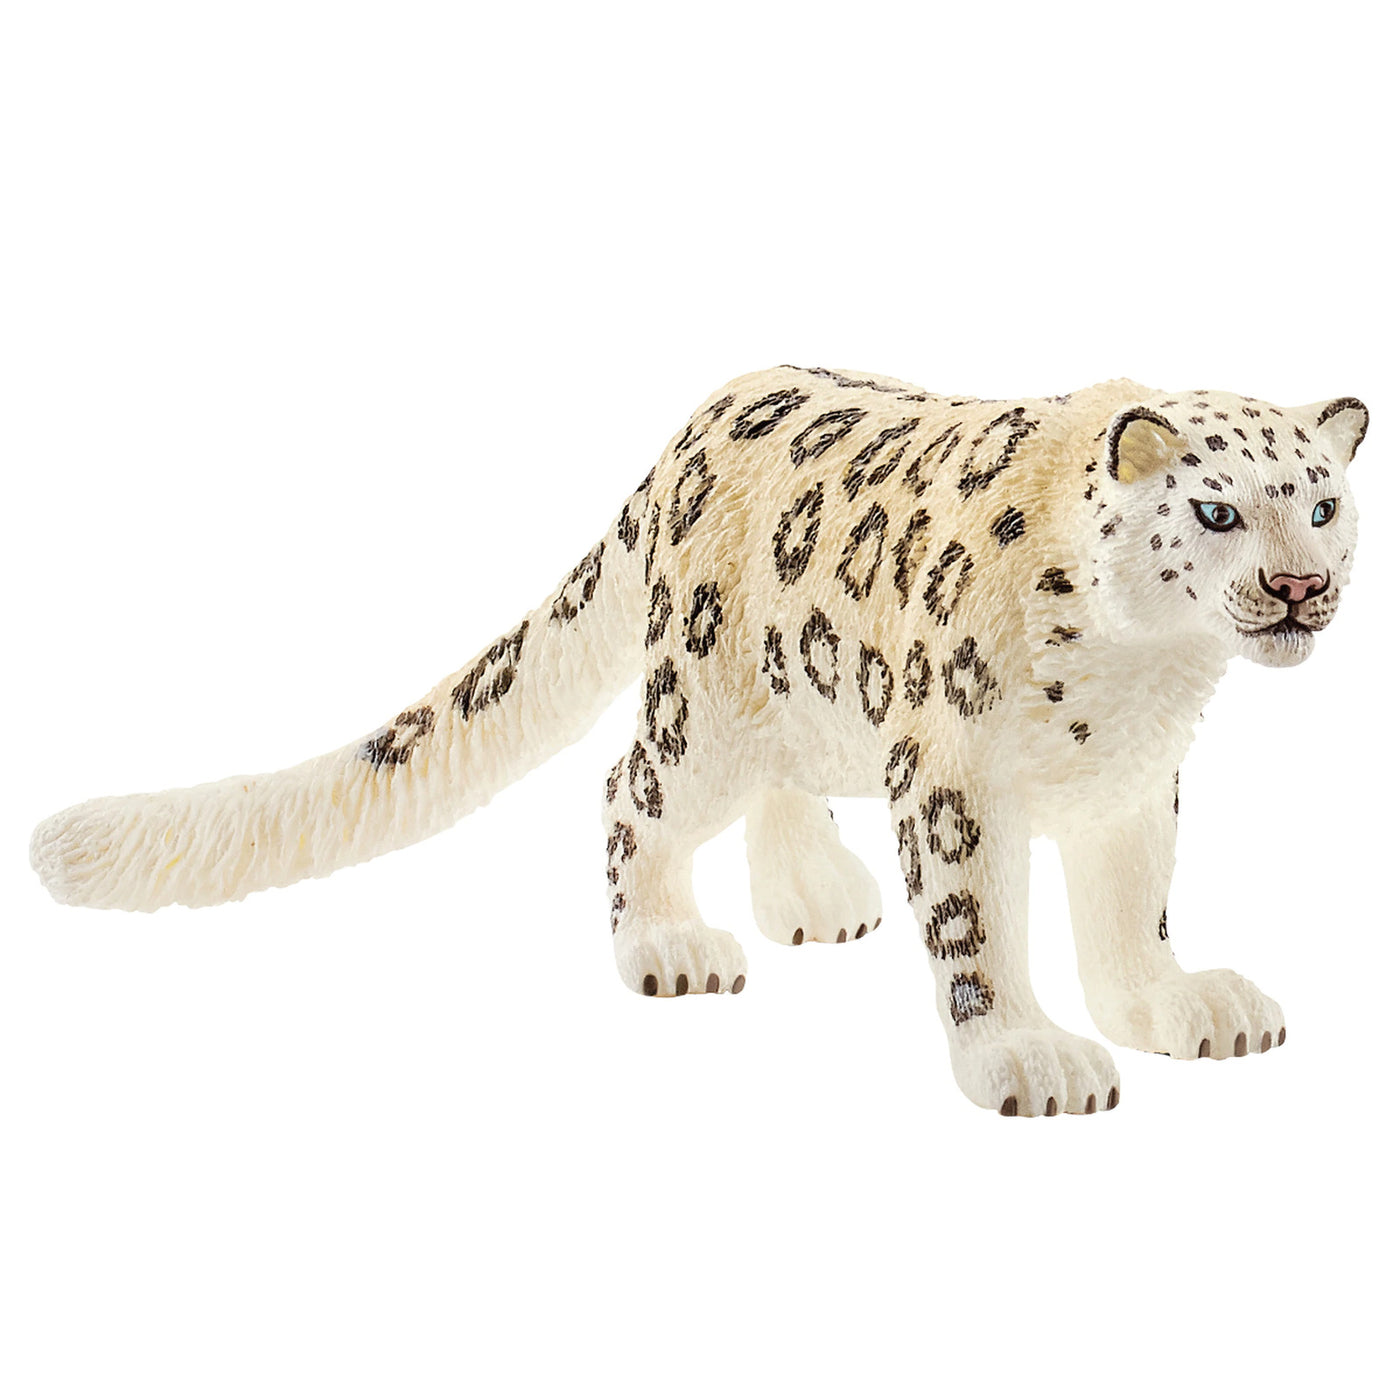 Schleich 14838 Snow Leopard figurine